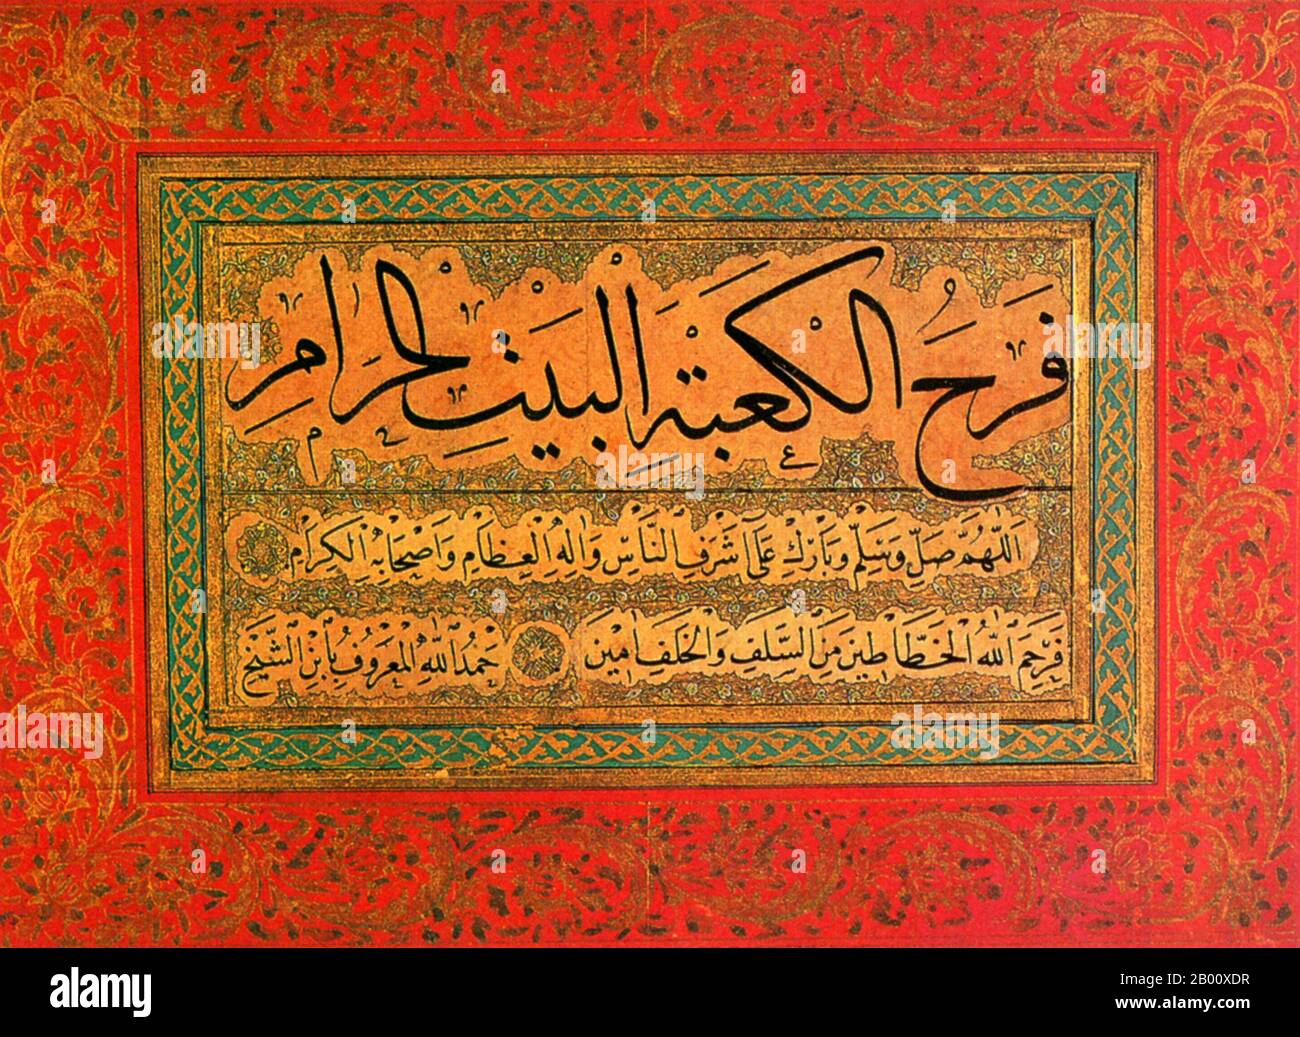 Turchia/Iran: Una pagina di un album di calligraphy, c.. 1500, negli scritti di ‘thuluth’ e ‘naskh’ del famoso calligrafo ottomano Shaykh Hamdullah al-Amasi (1436-1520). Il copione Naskh è considerato uno degli stili più rinomati della calligrafia islamica. Naskh è emerso dai cambiamenti nello script Kufic. L'uso diffuso dello stile è dovuto alla sua idoneità alla scrittura. Thuluth script, insieme a Naskh script, è stato applicato a molti testi. Questo particolare stile è stato utilizzato principalmente per iscrizioni in moschee, luoghi religiosi e monumenti architettonici. Foto Stock